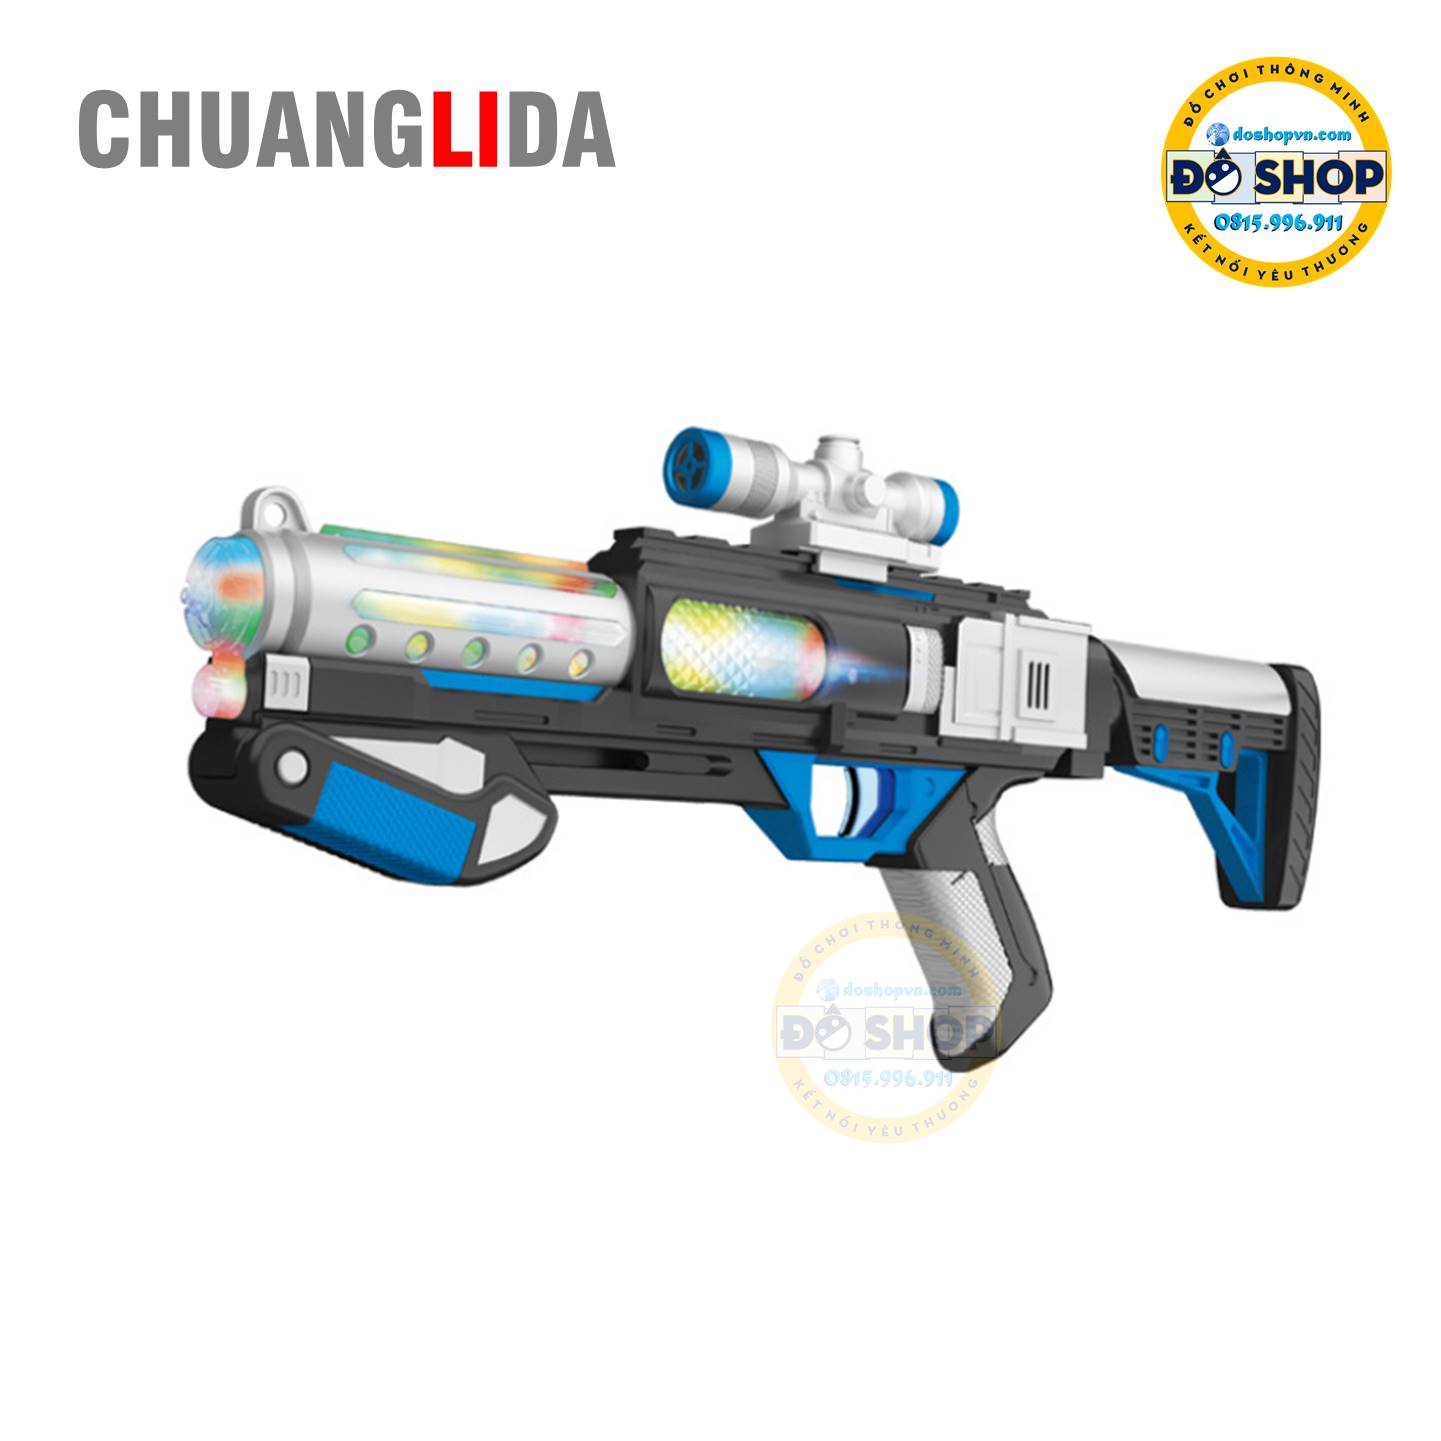 Đồ chơi súng phát sáng ChuangLiDa SS06 có thiết kế rất đẹp và xịn